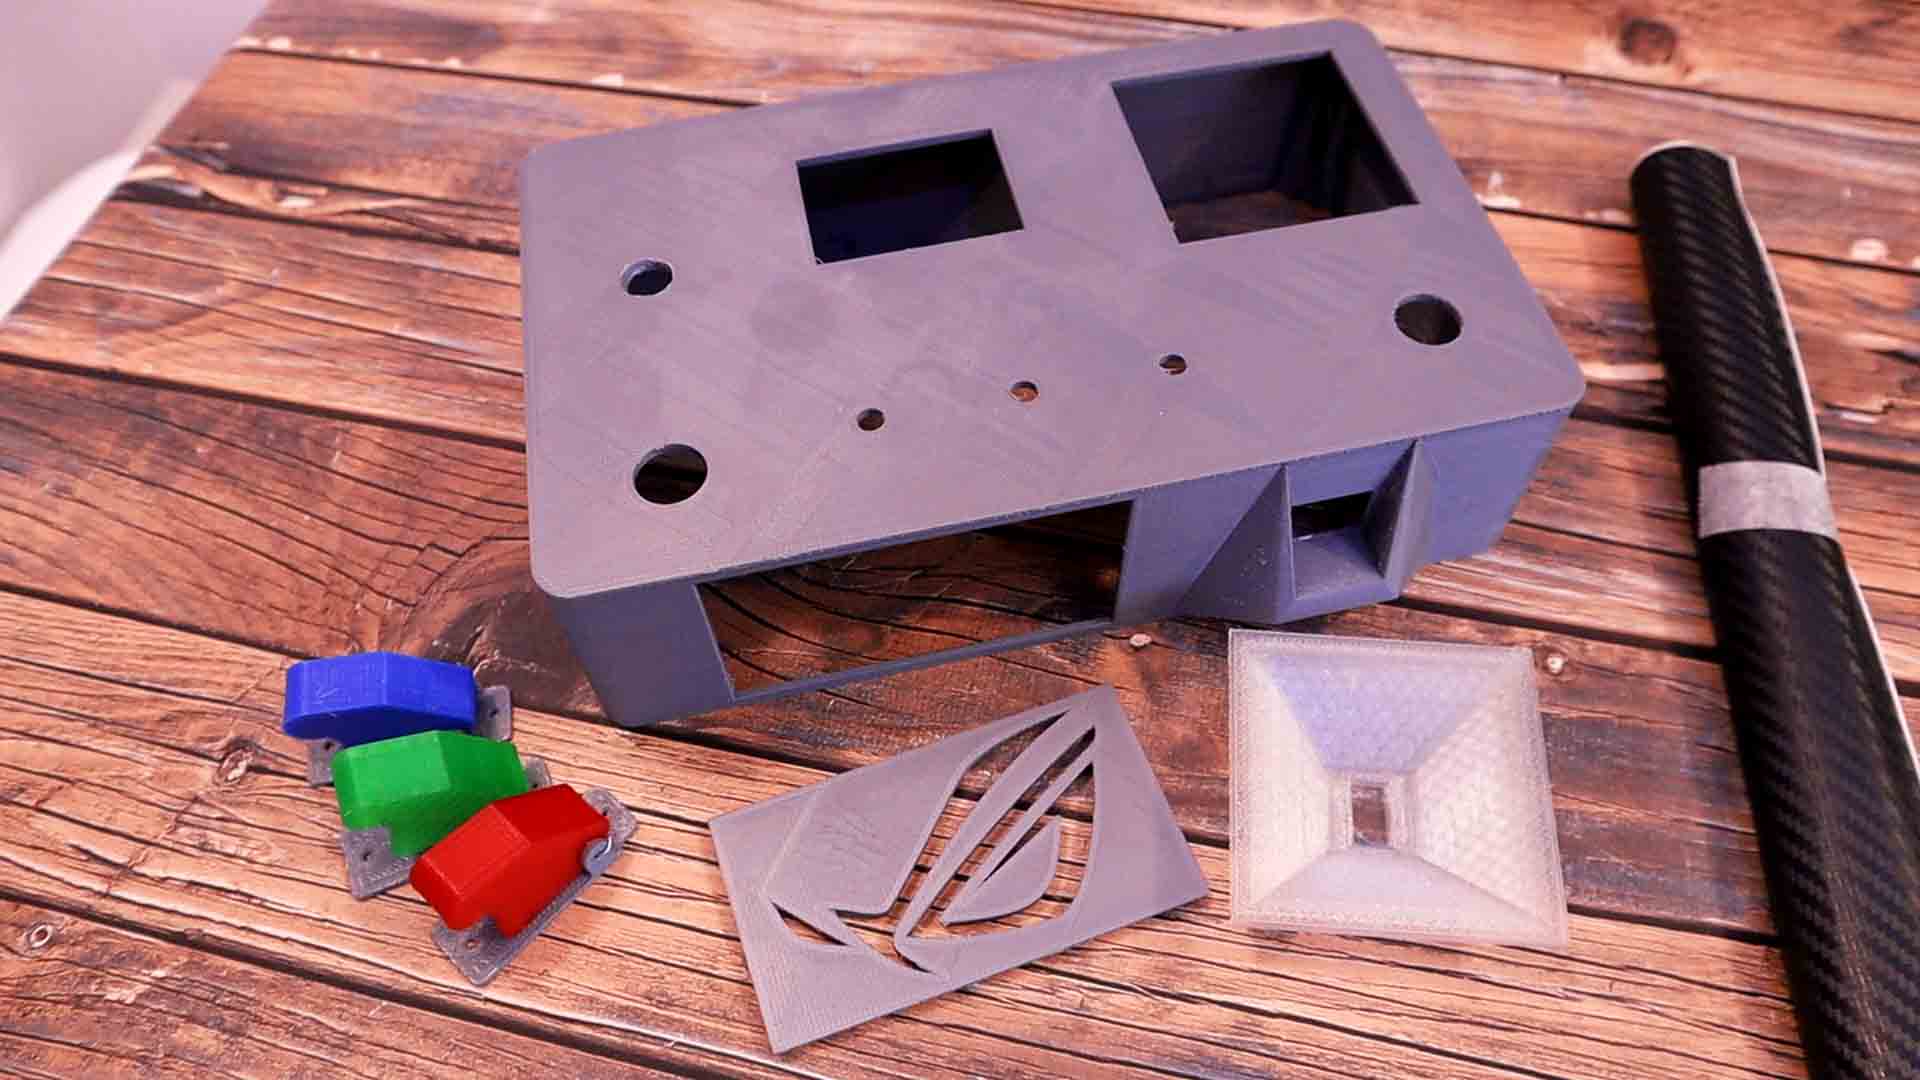 Arduino escaperoom 3D printedc case puzzle